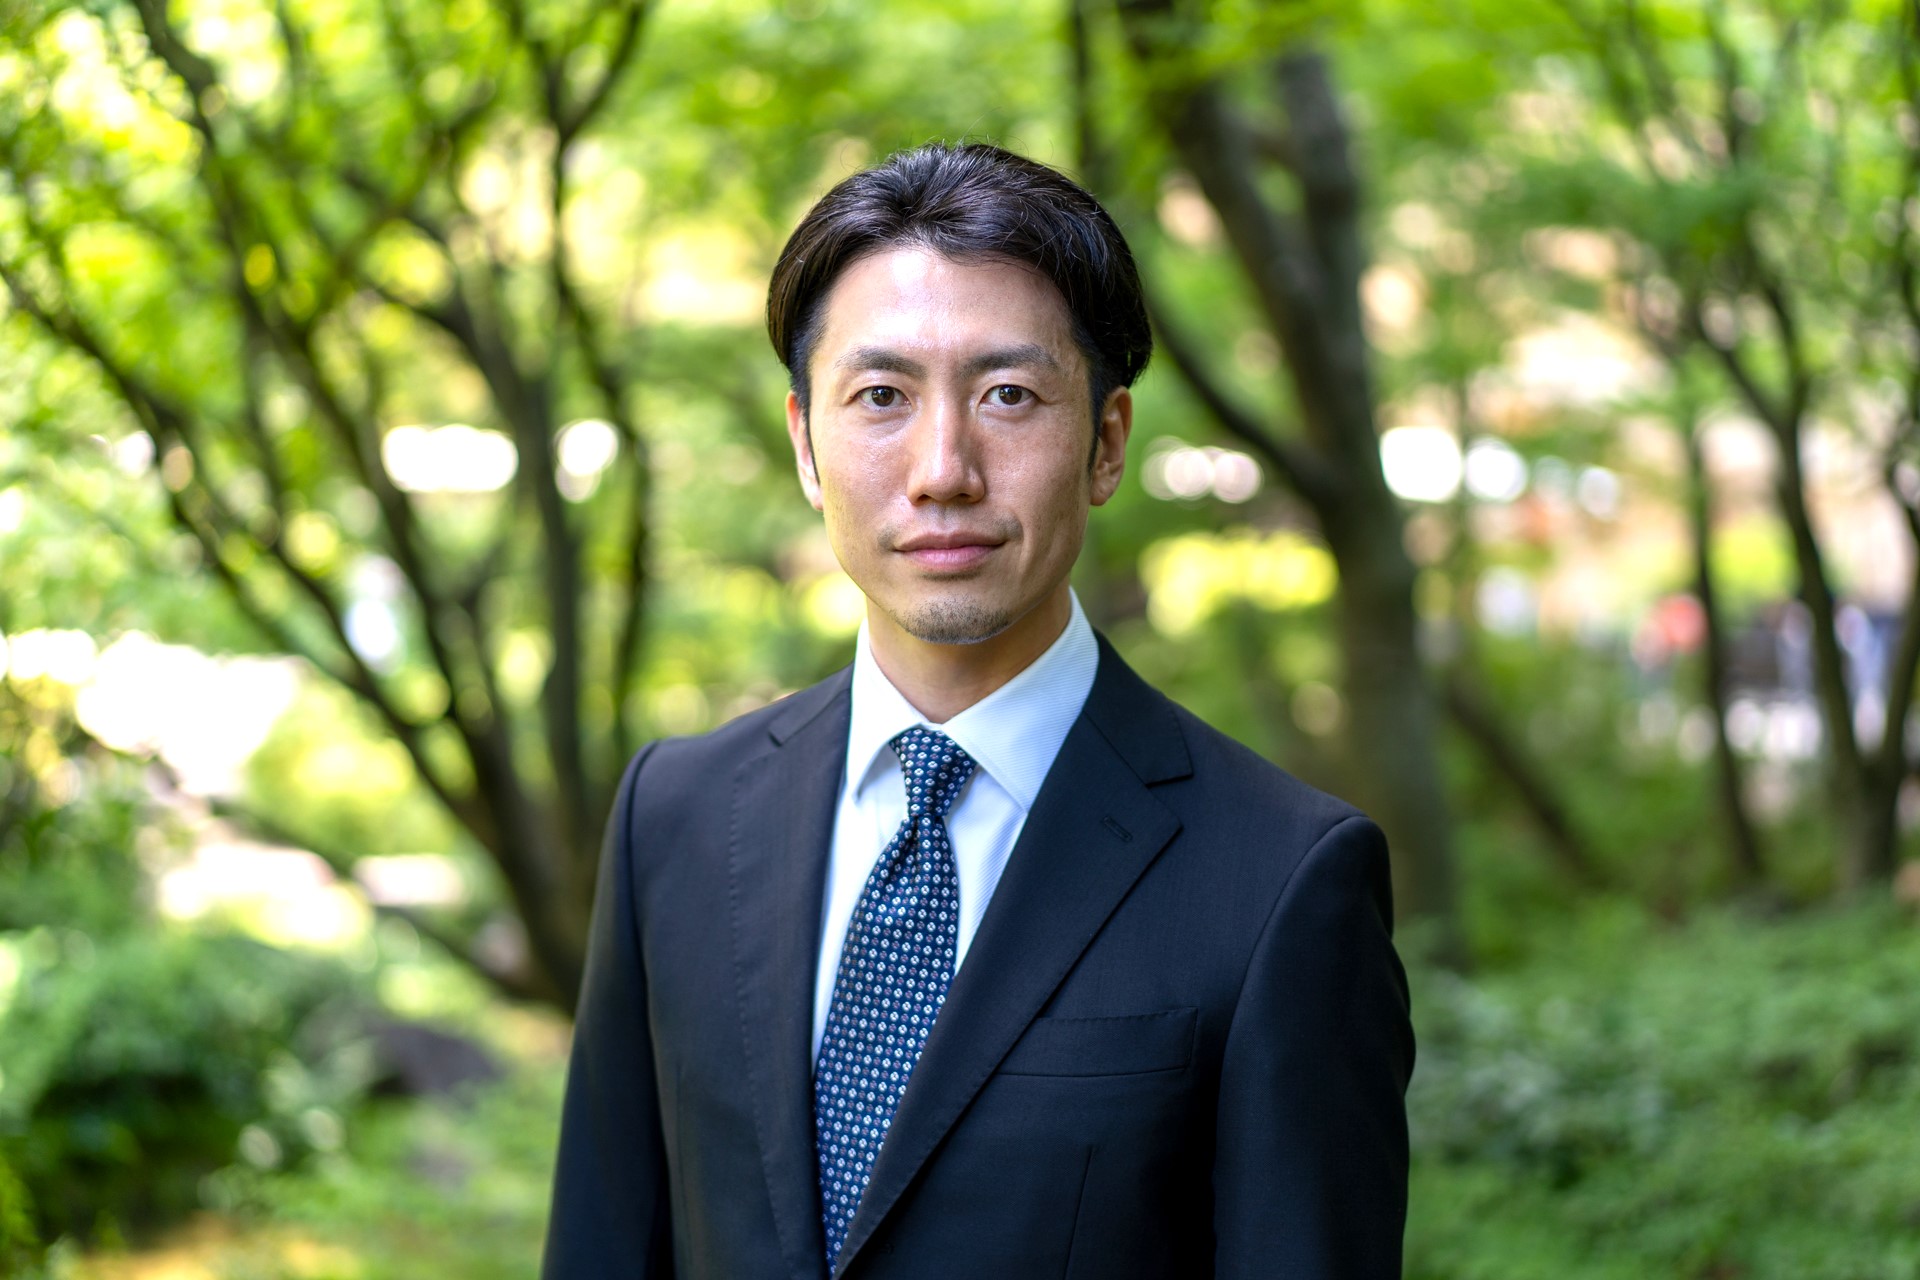 代表取締役　諸田 眞仁氏
2013年に同社を設立し、これまで弊社の成長を牽引してきました。